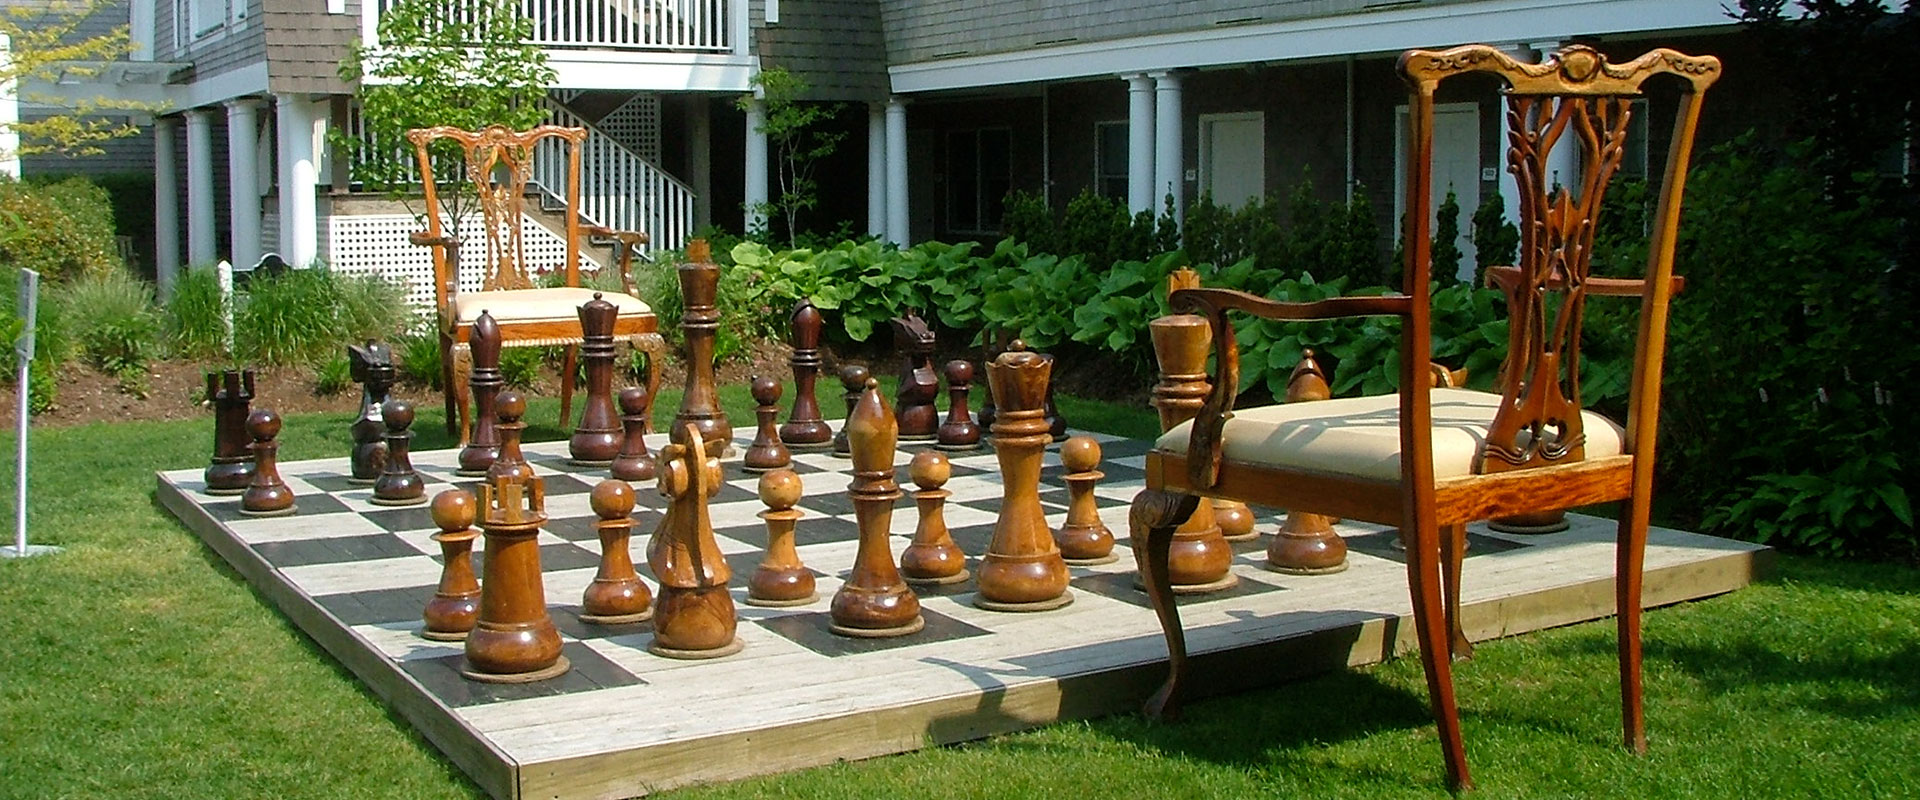 Jogo de xadrez Rei e Rainha decoração. Peças de xadrez de madeira